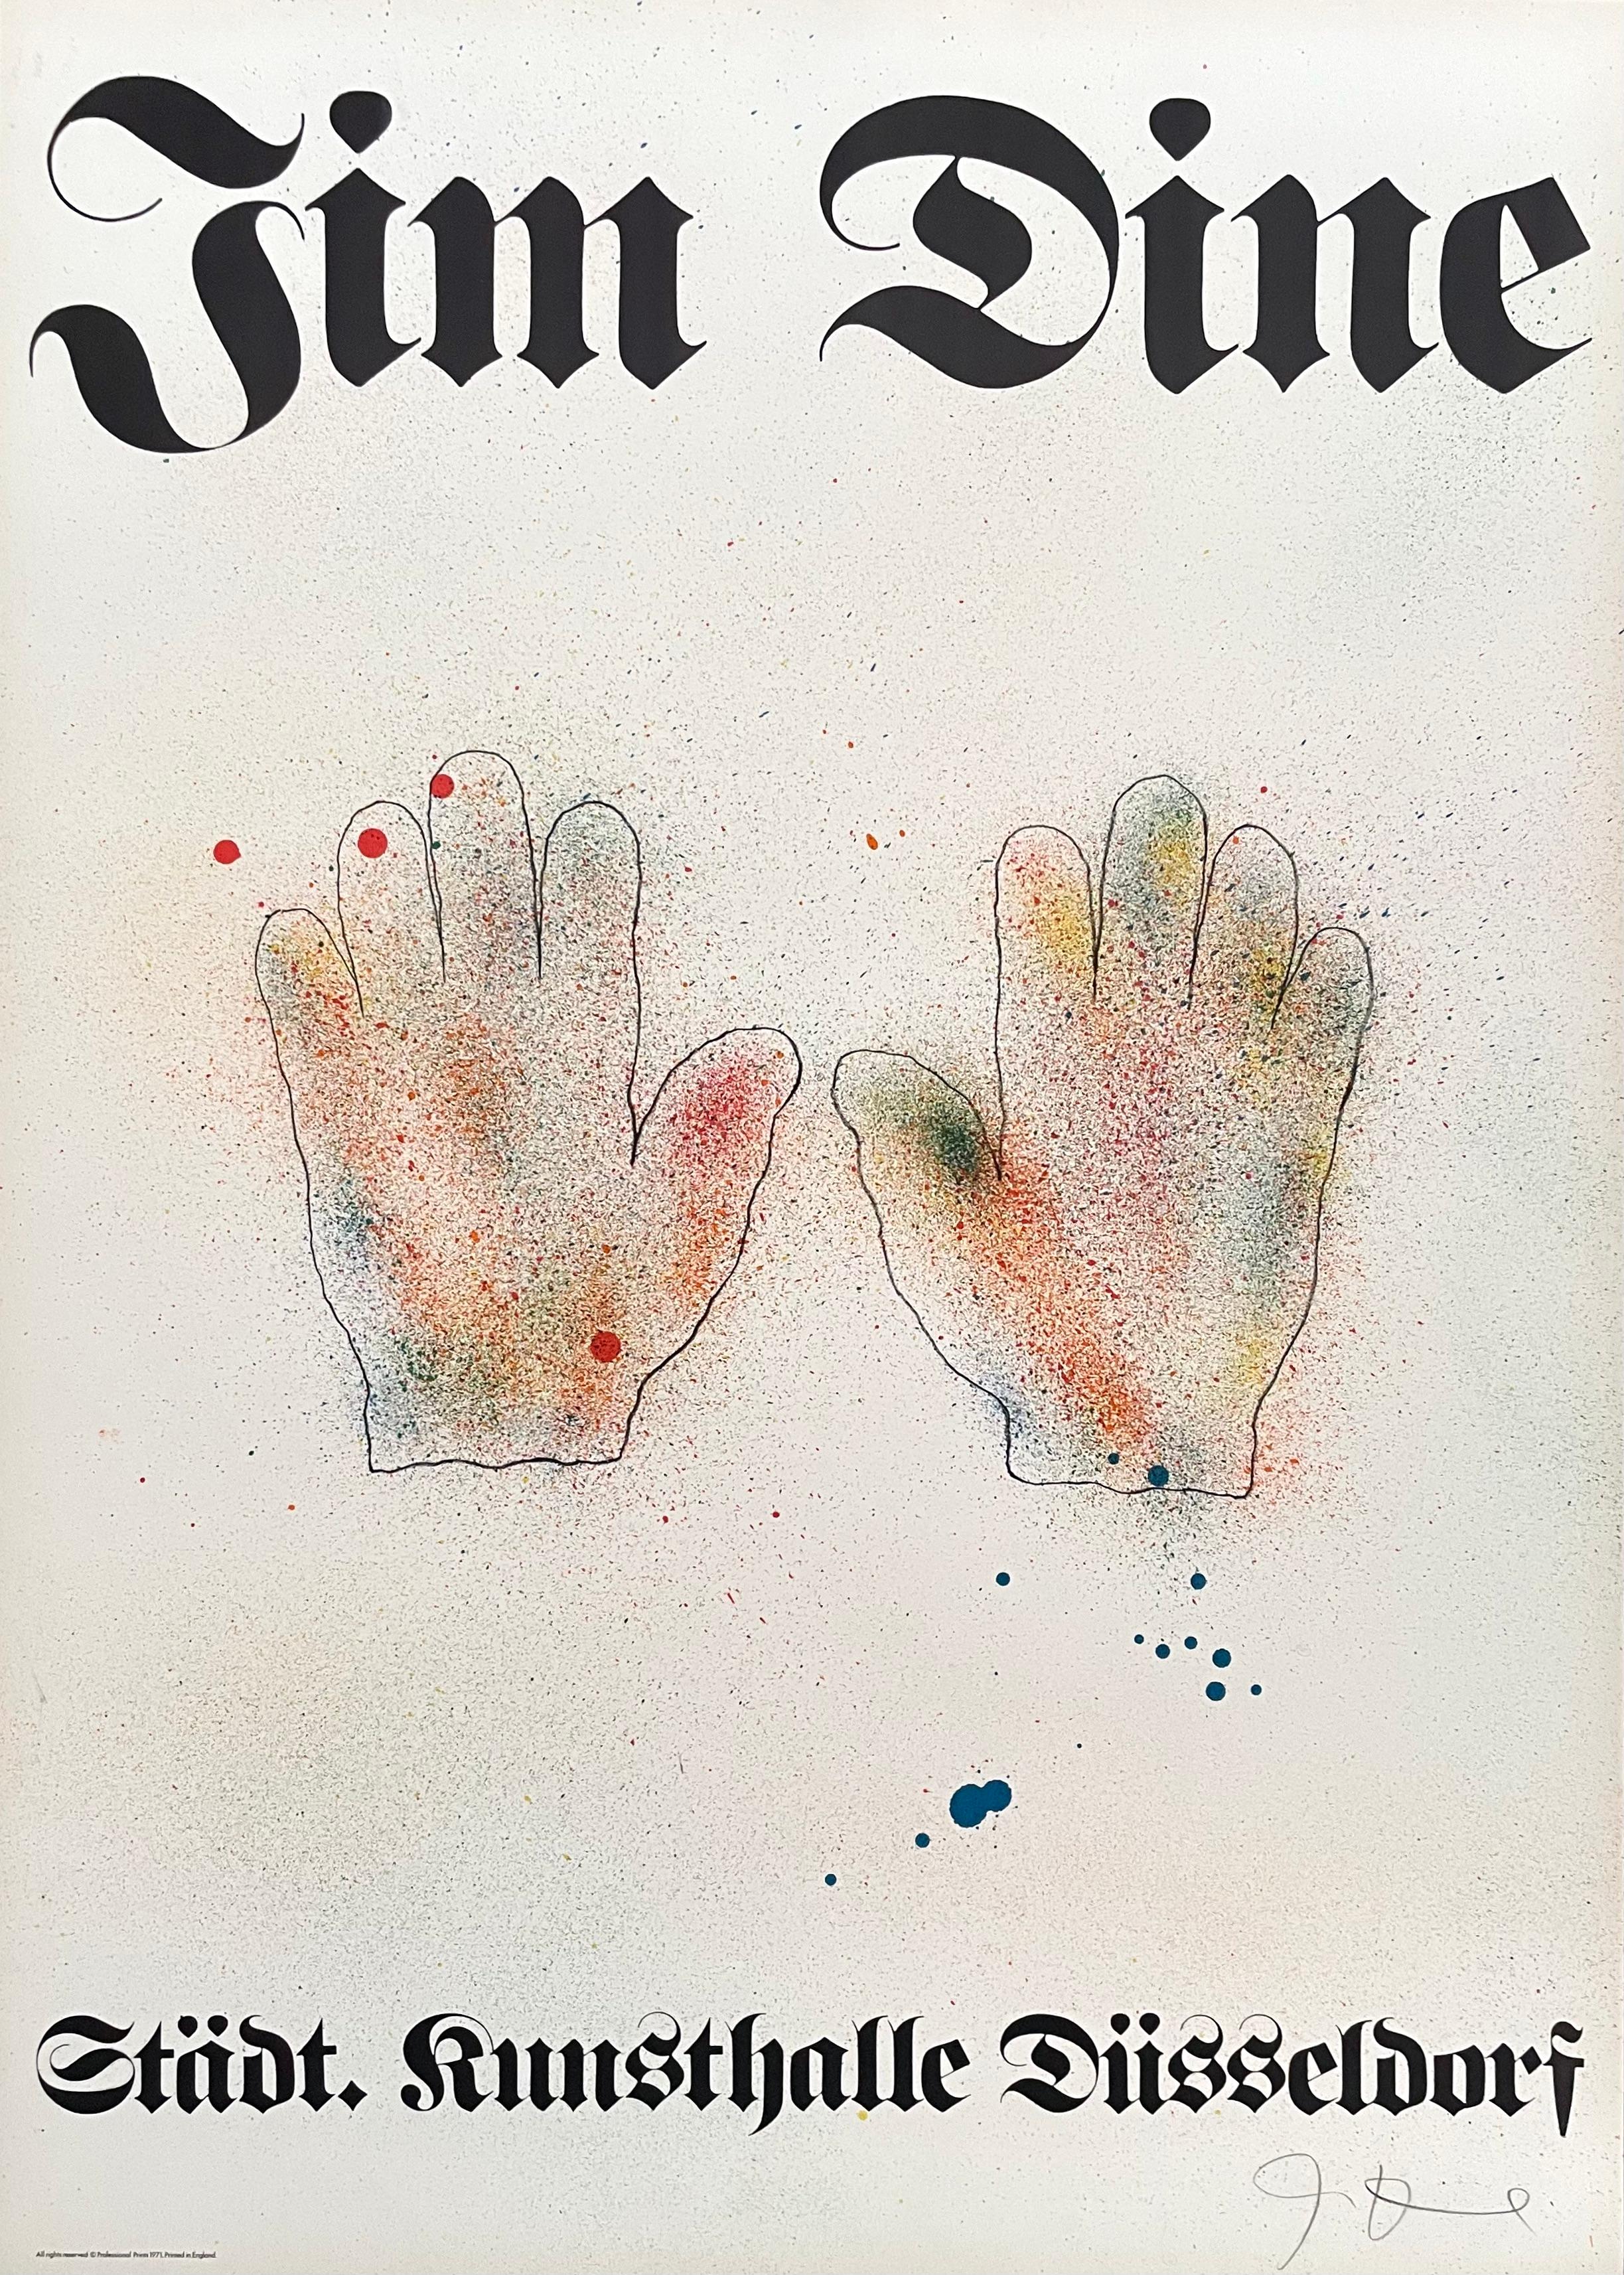 Künstler: Nach Jim Dine (1935)
Titel: Hände, Ausstellungsplakat
Jahr: 1971
Medium: Lithographie auf Arches-Papier
Größe: 30,75 x 22 Zoll
Zustand: Ausgezeichnet
Beschriftung: Vom Künstler mit Bleistift signiert.
Anmerkungen: Herausgegeben von